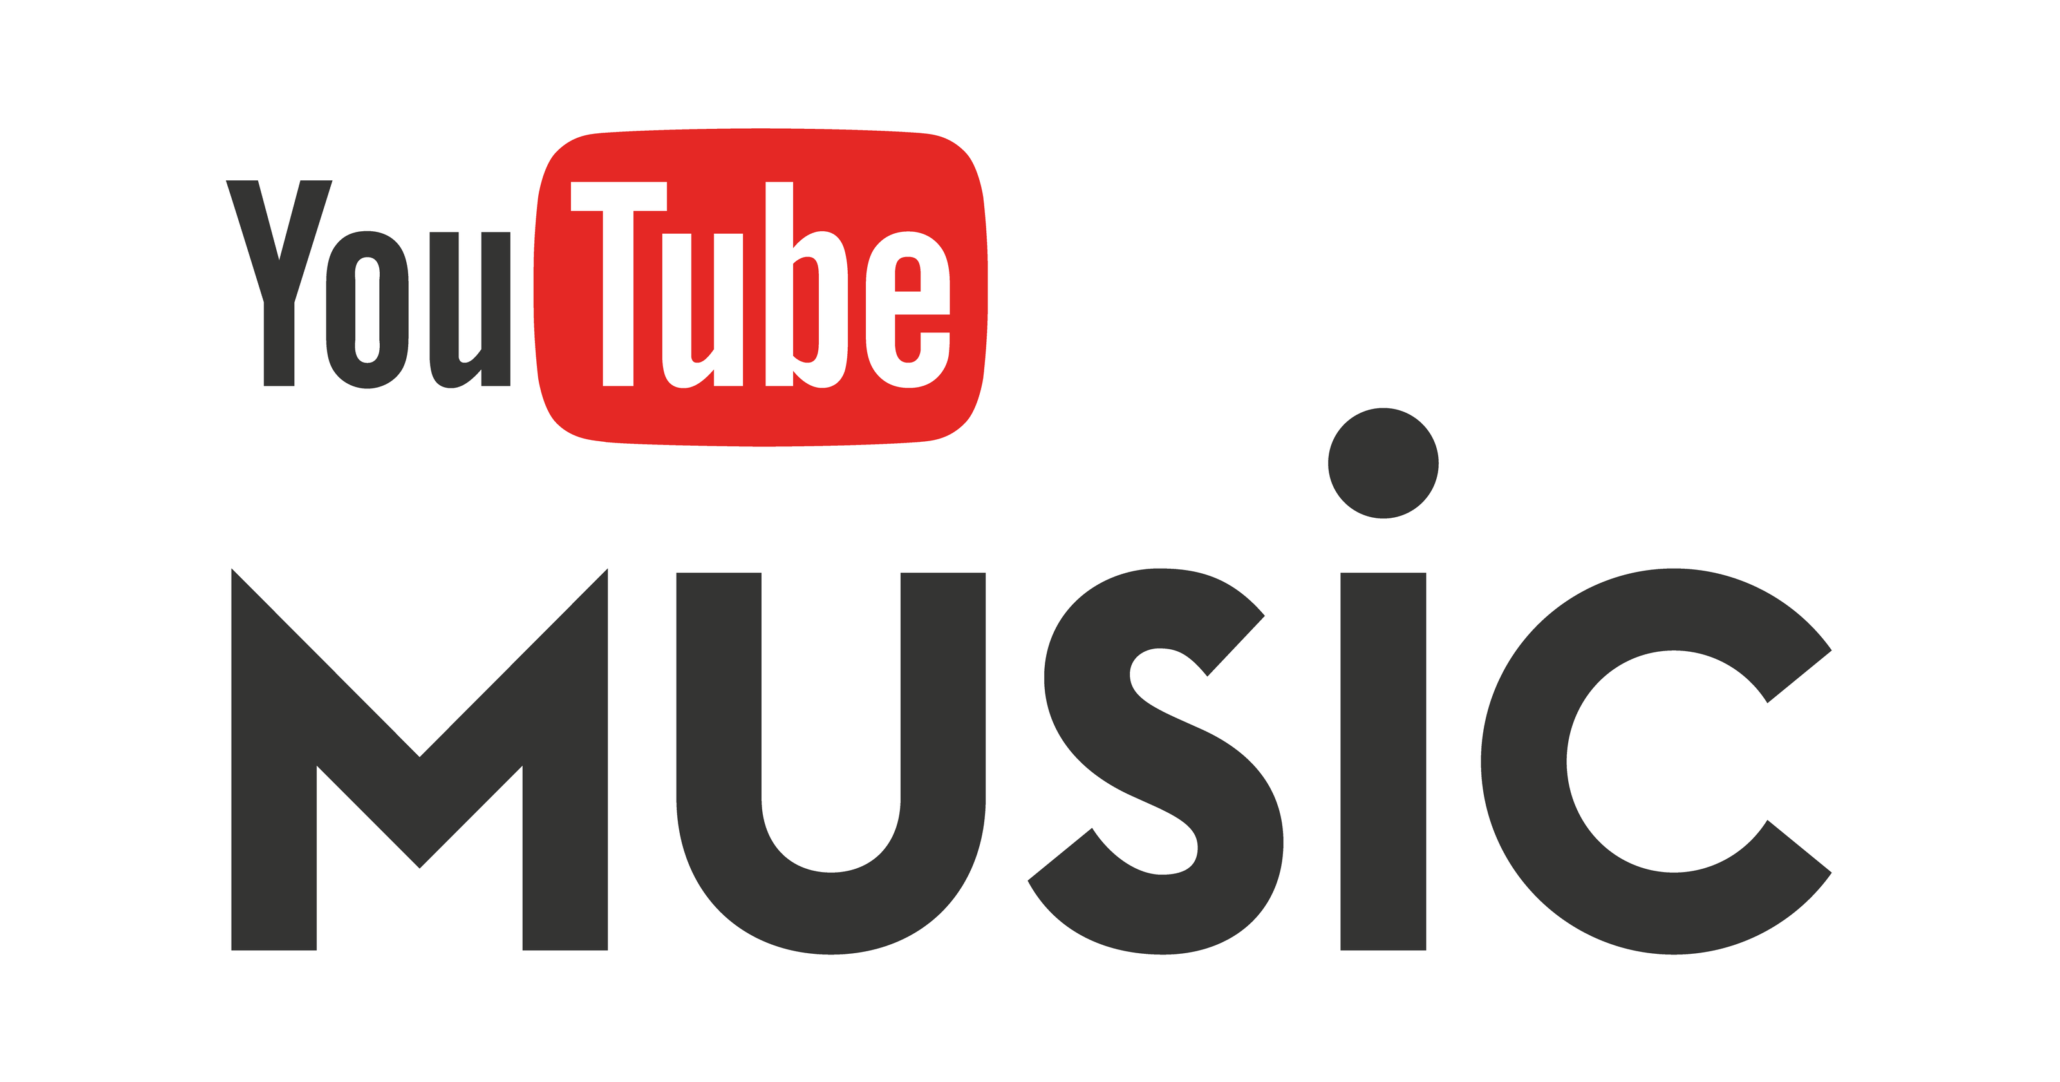 YouTube Music İndirme İşlemi